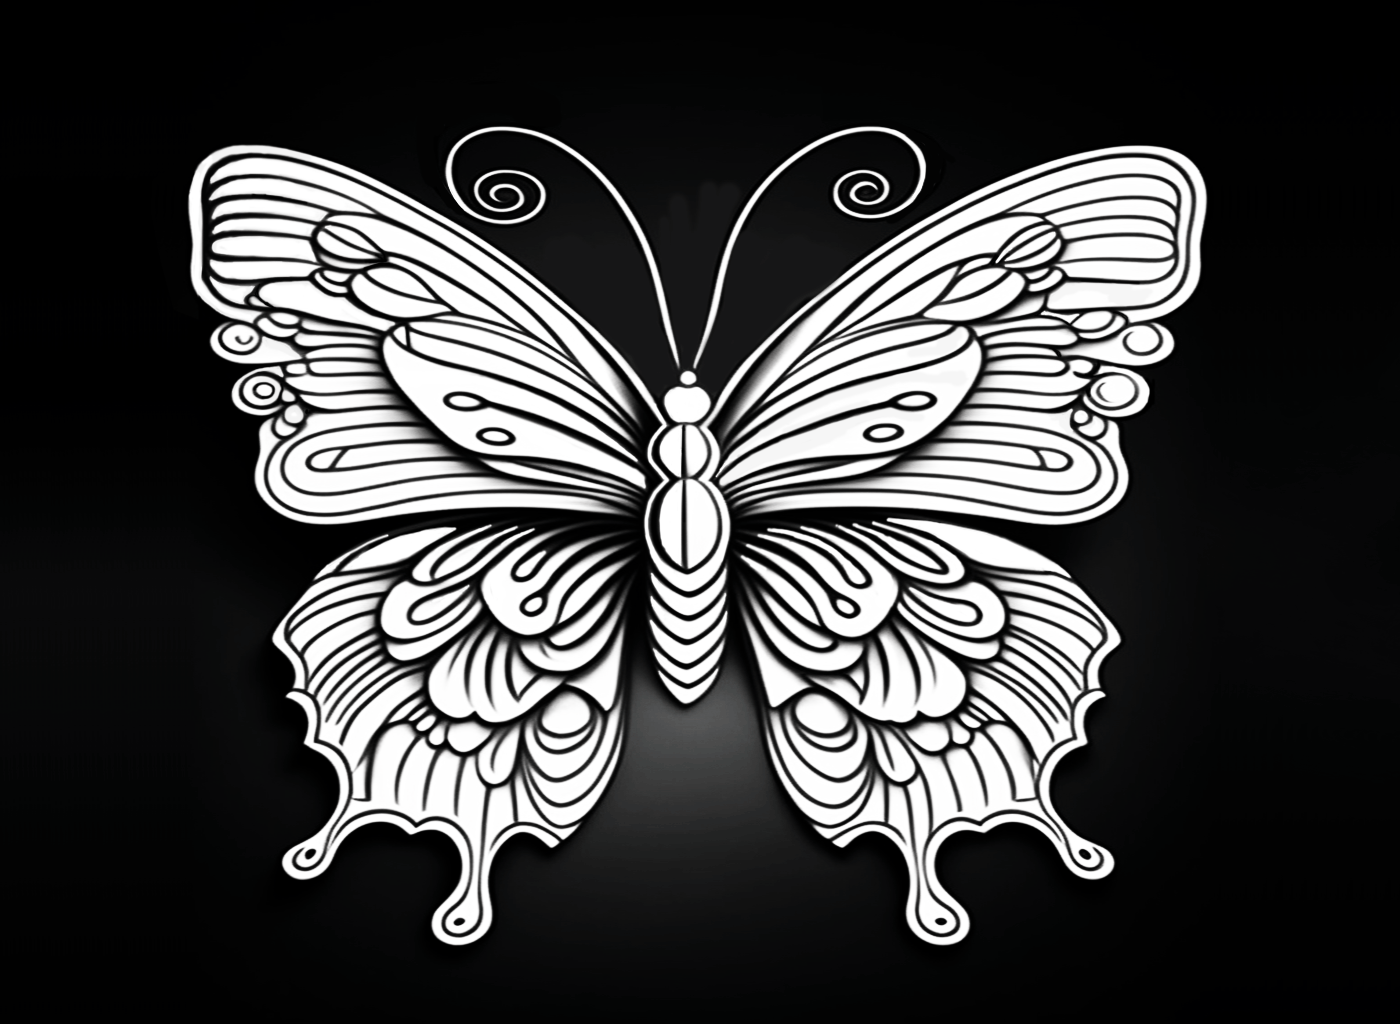 Dibujo de una mariposa sobre fondo negro para colorear